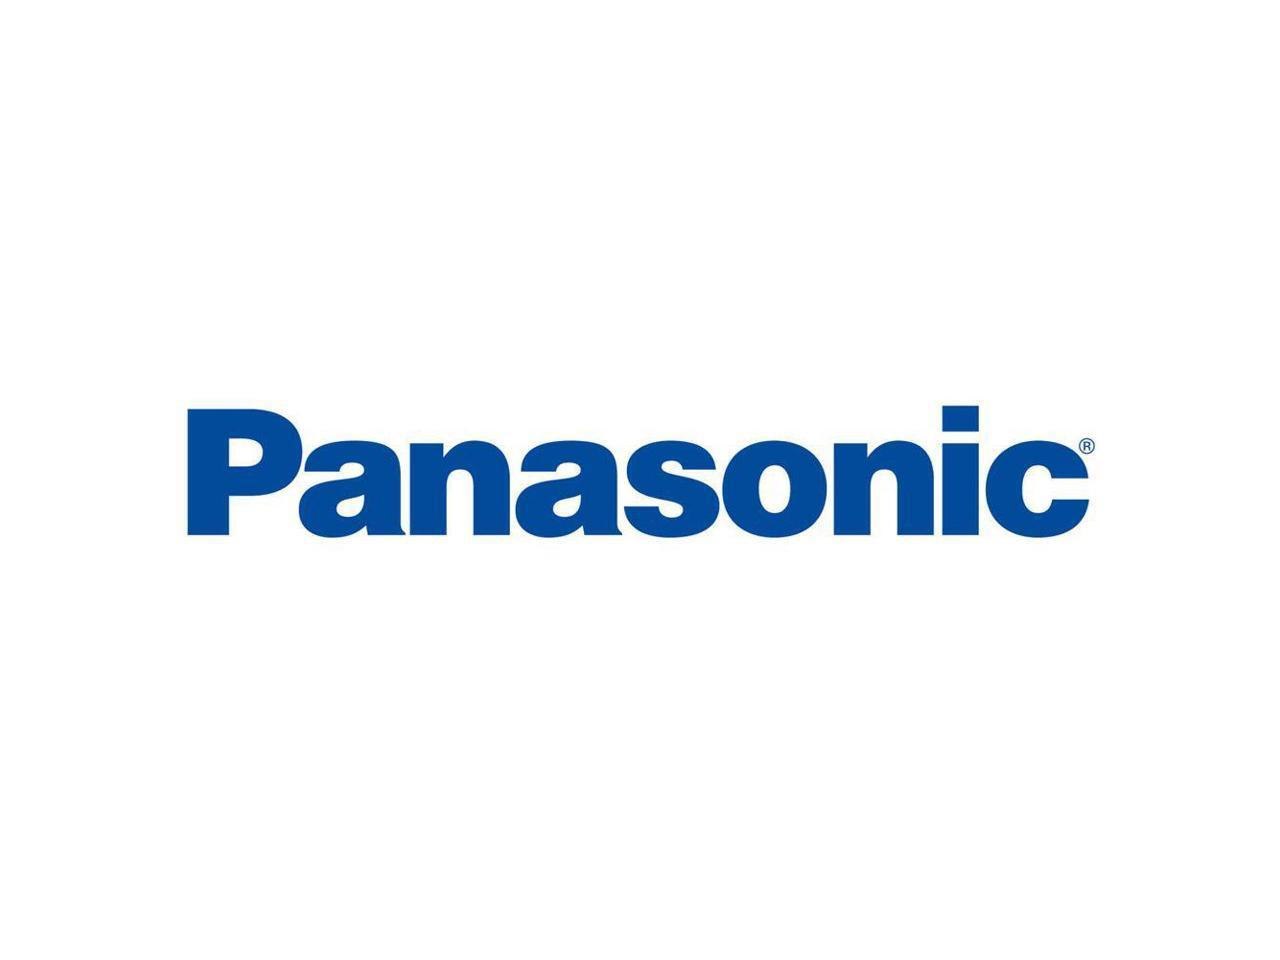 Panasonic Multimax 3-In-1 - Antenna - Navigation, Cellular - Threaded Bolt Mount